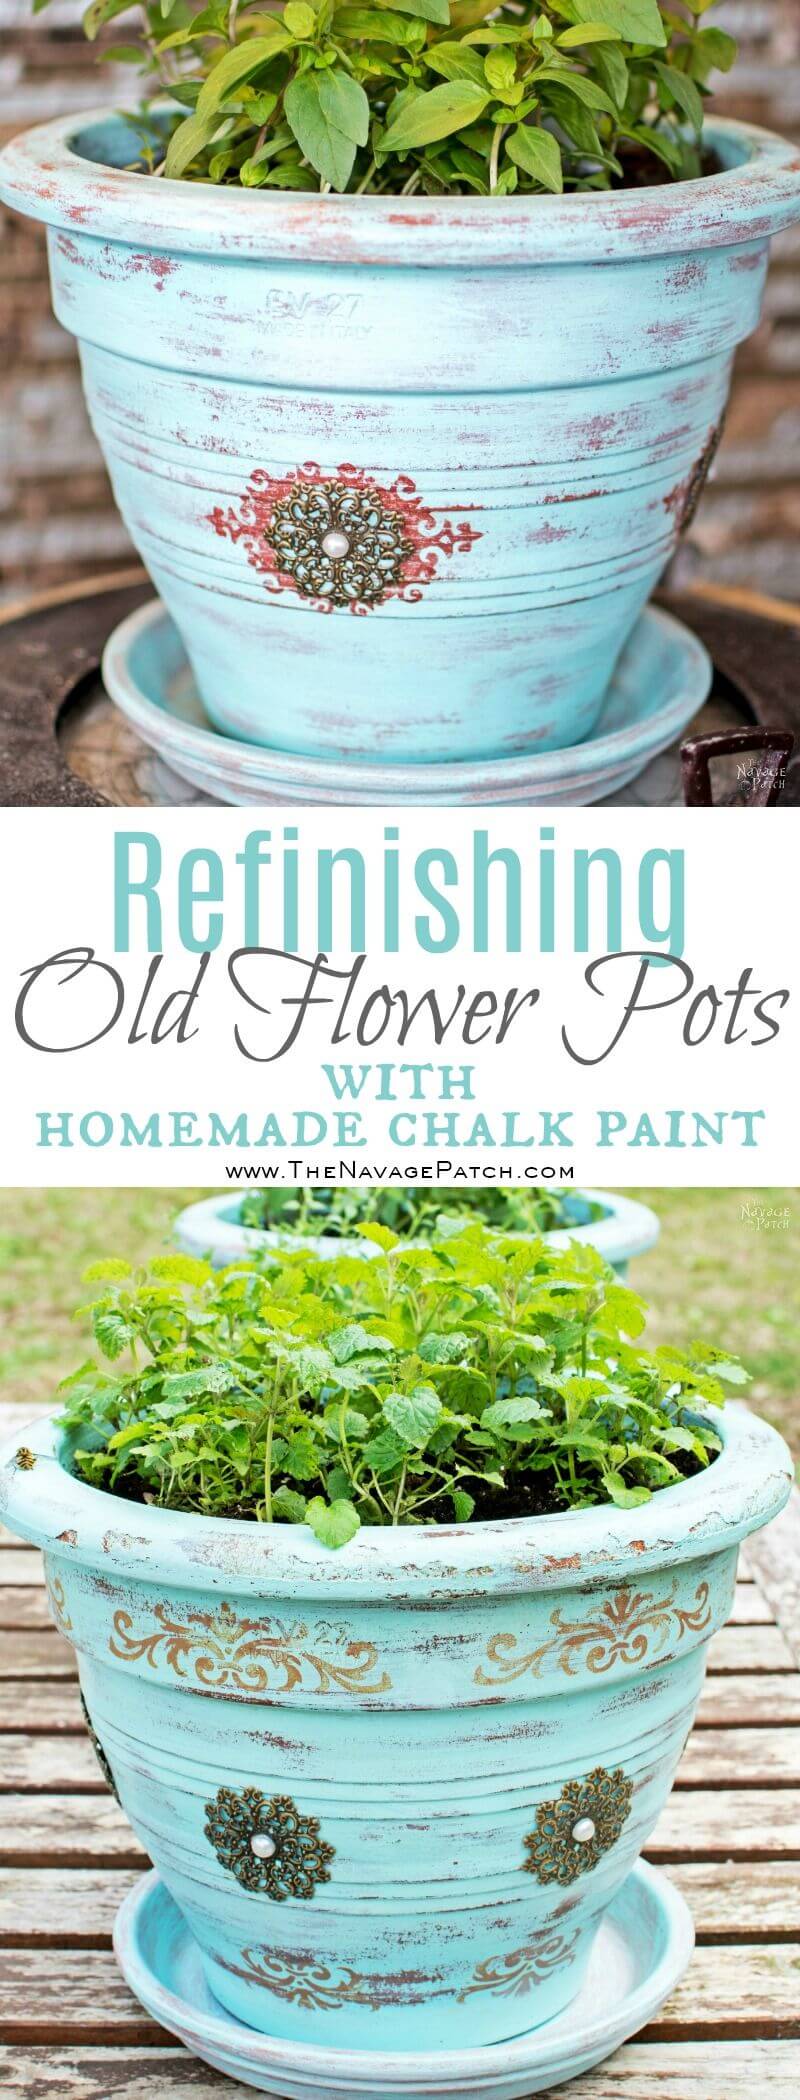 Chalk Paint Creates Antique Charm in Pots | DIY Painted Garden Decoration Ideas